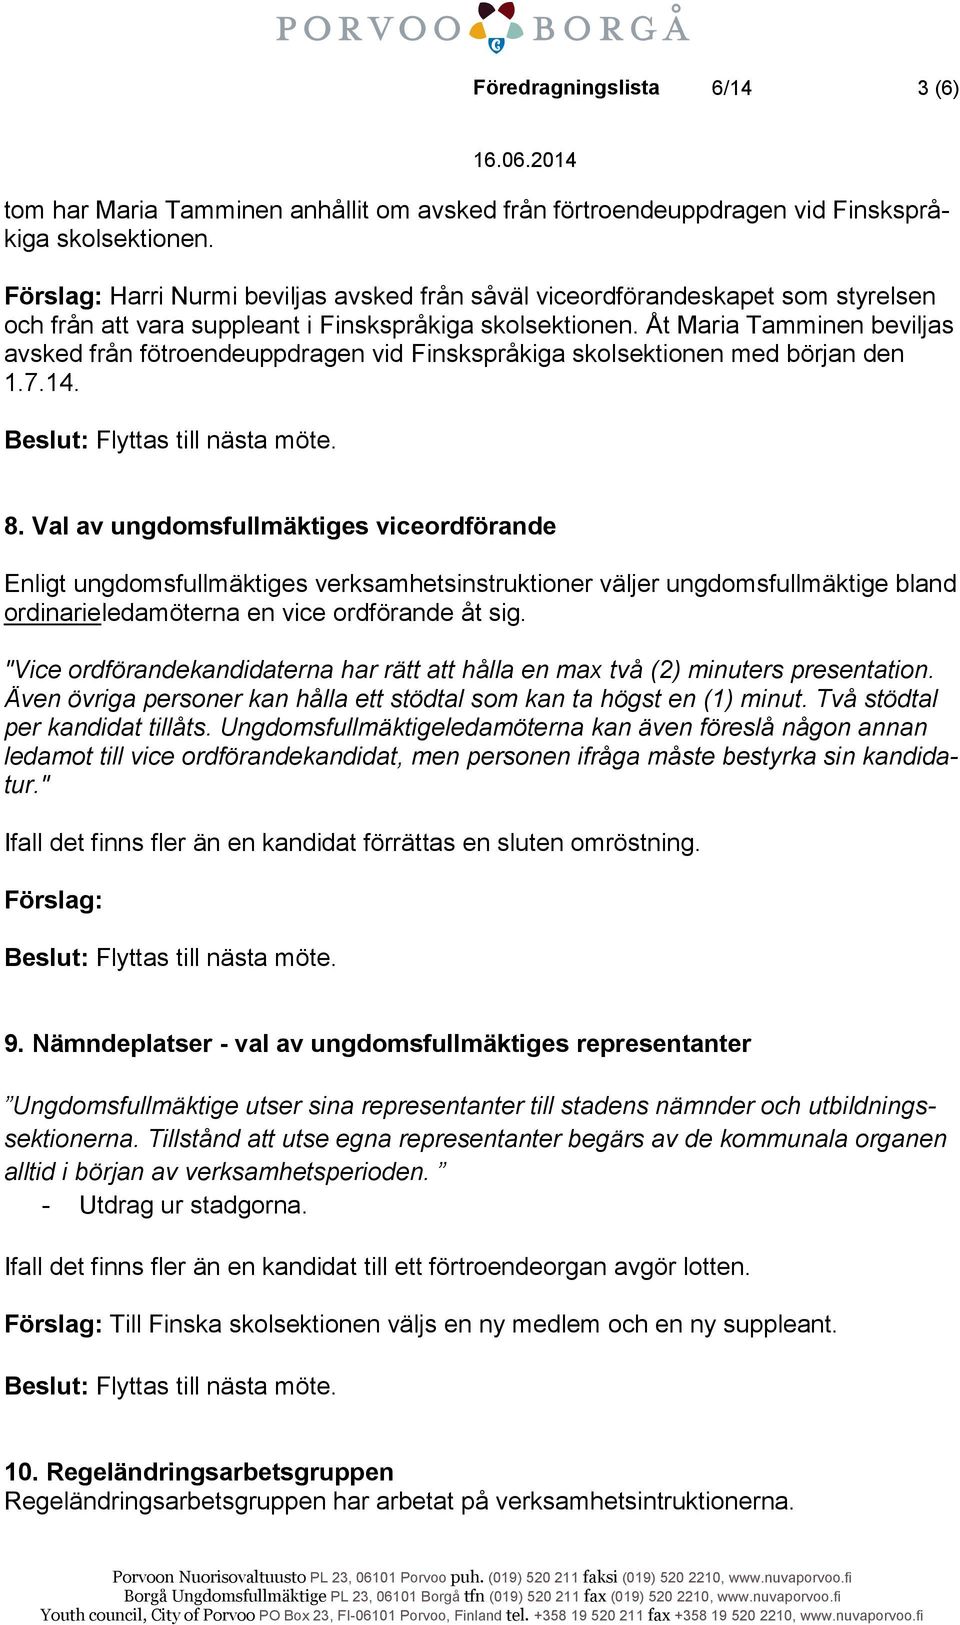 Åt Maria Tamminen beviljas avsked från fötroendeuppdragen vid Finskspråkiga skolsektionen med början den 1.7.14. 8.